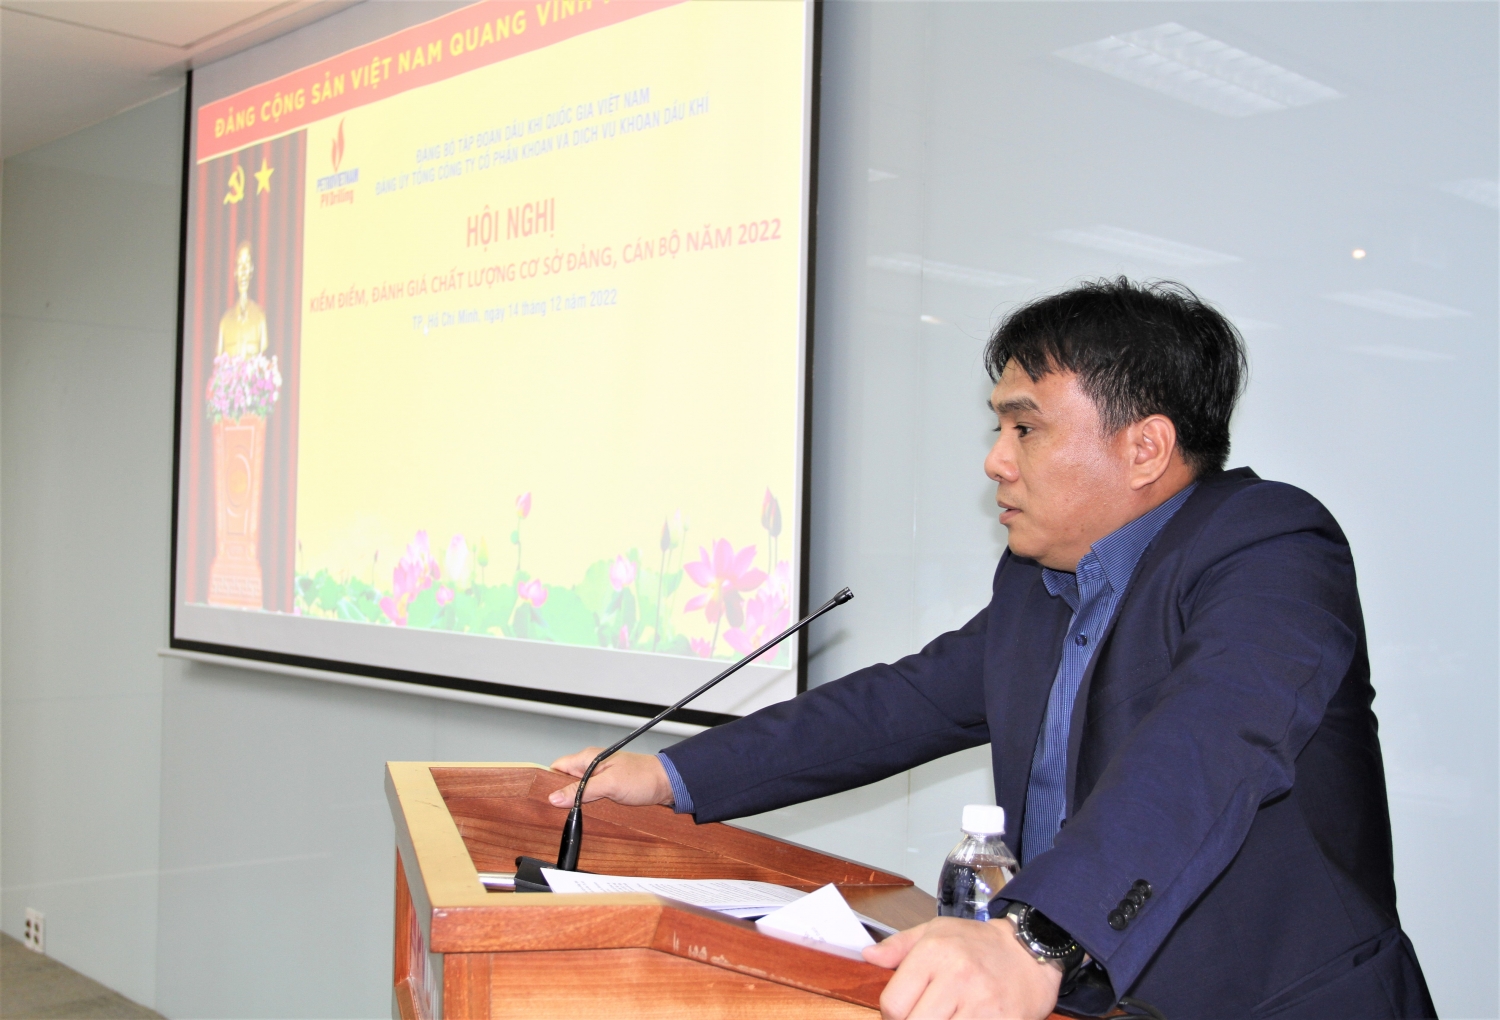 Đồng chí Nguyễn Xuân Cường - Bí thư Đảng ủy, Tổng giám đốc PV Drilling báo cáo kiểm điểm tập thể Ban Tổng giám đốc.